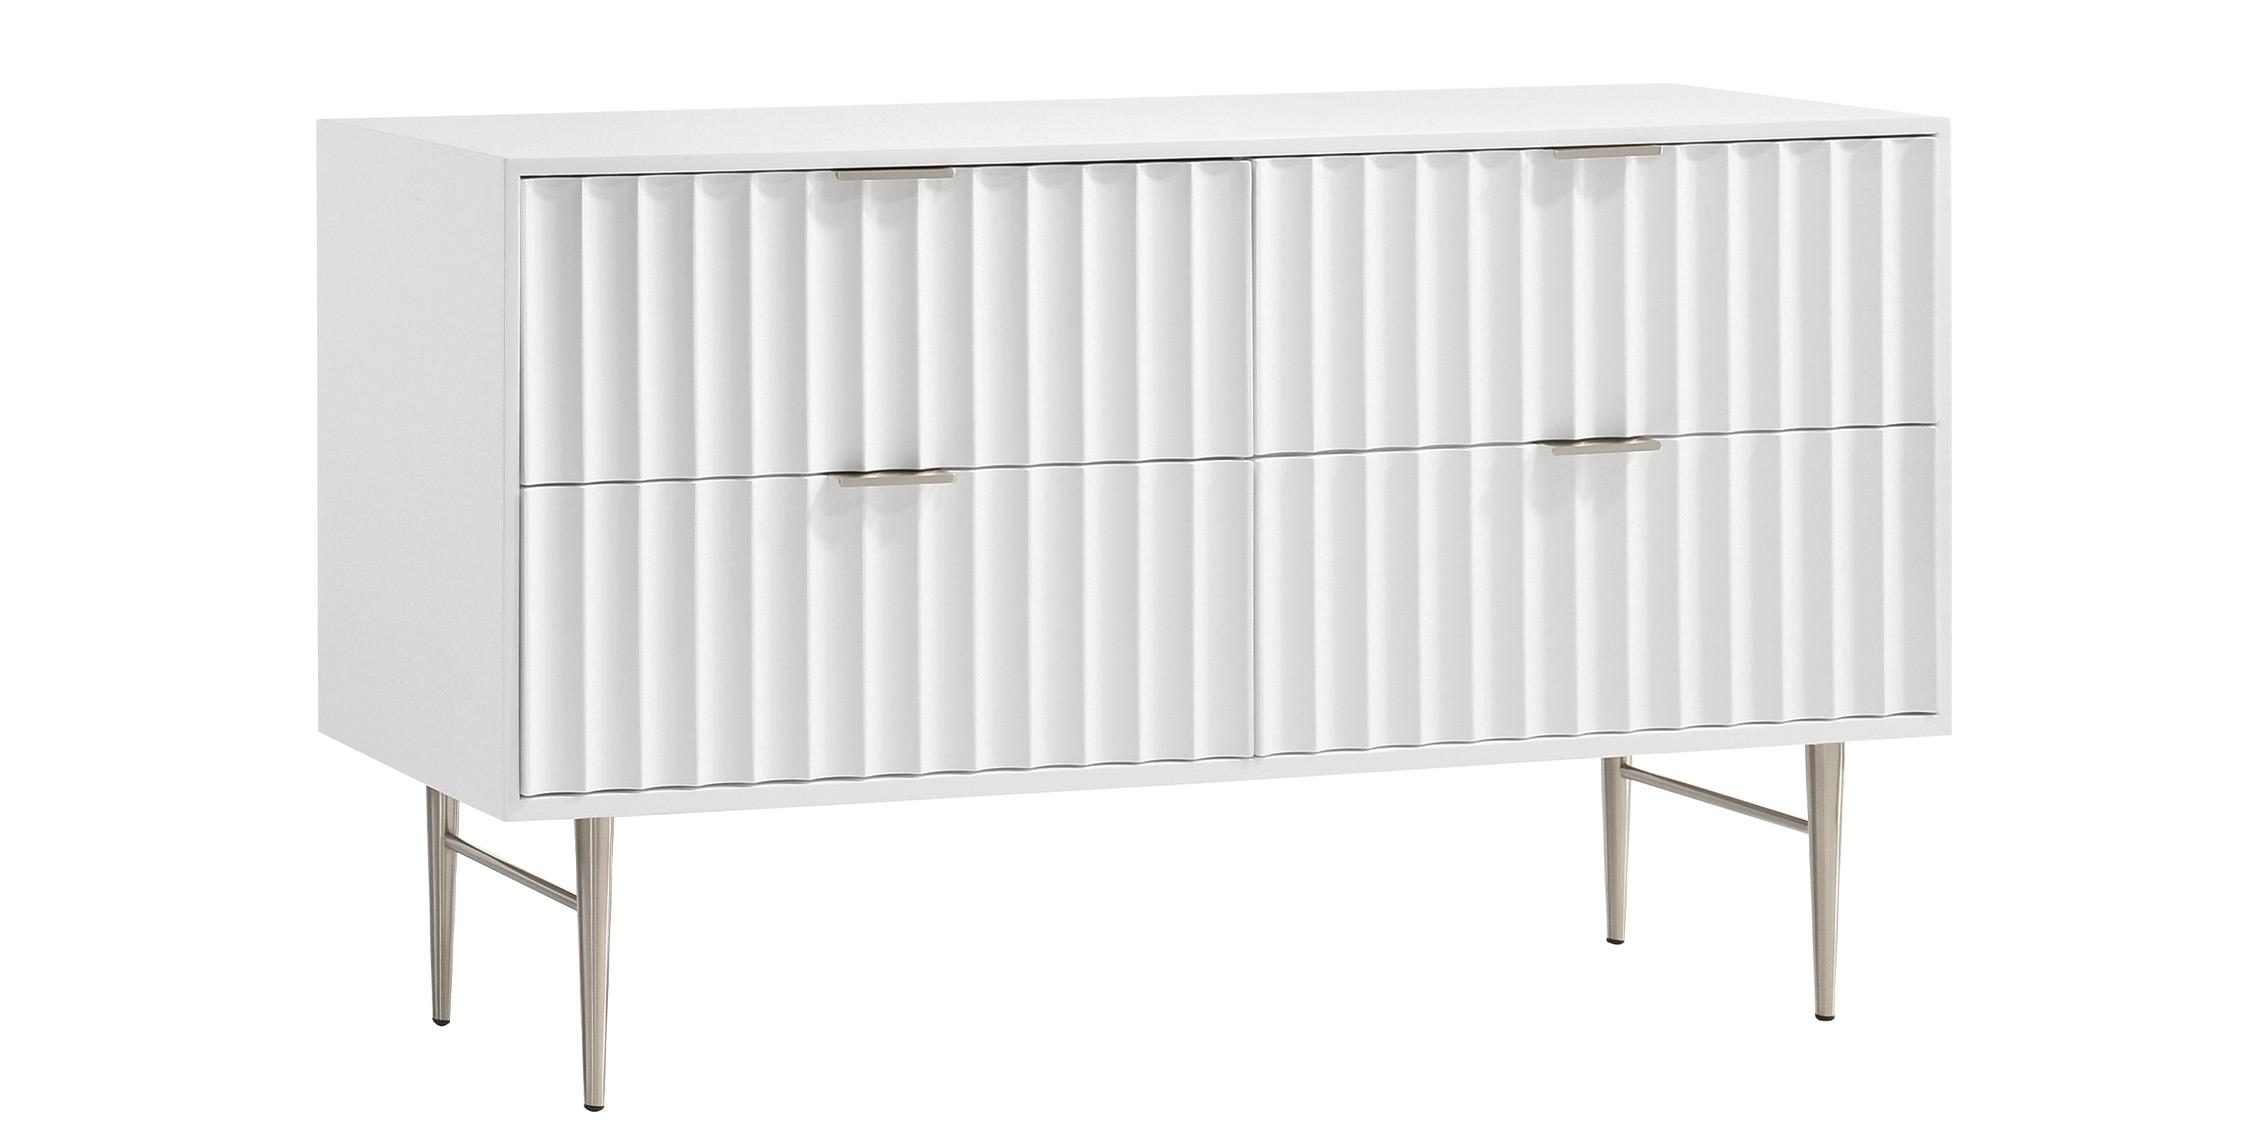 Contemporary, Modern Dresser MODERNIST 802White-D 802White-D in Chrome, White 